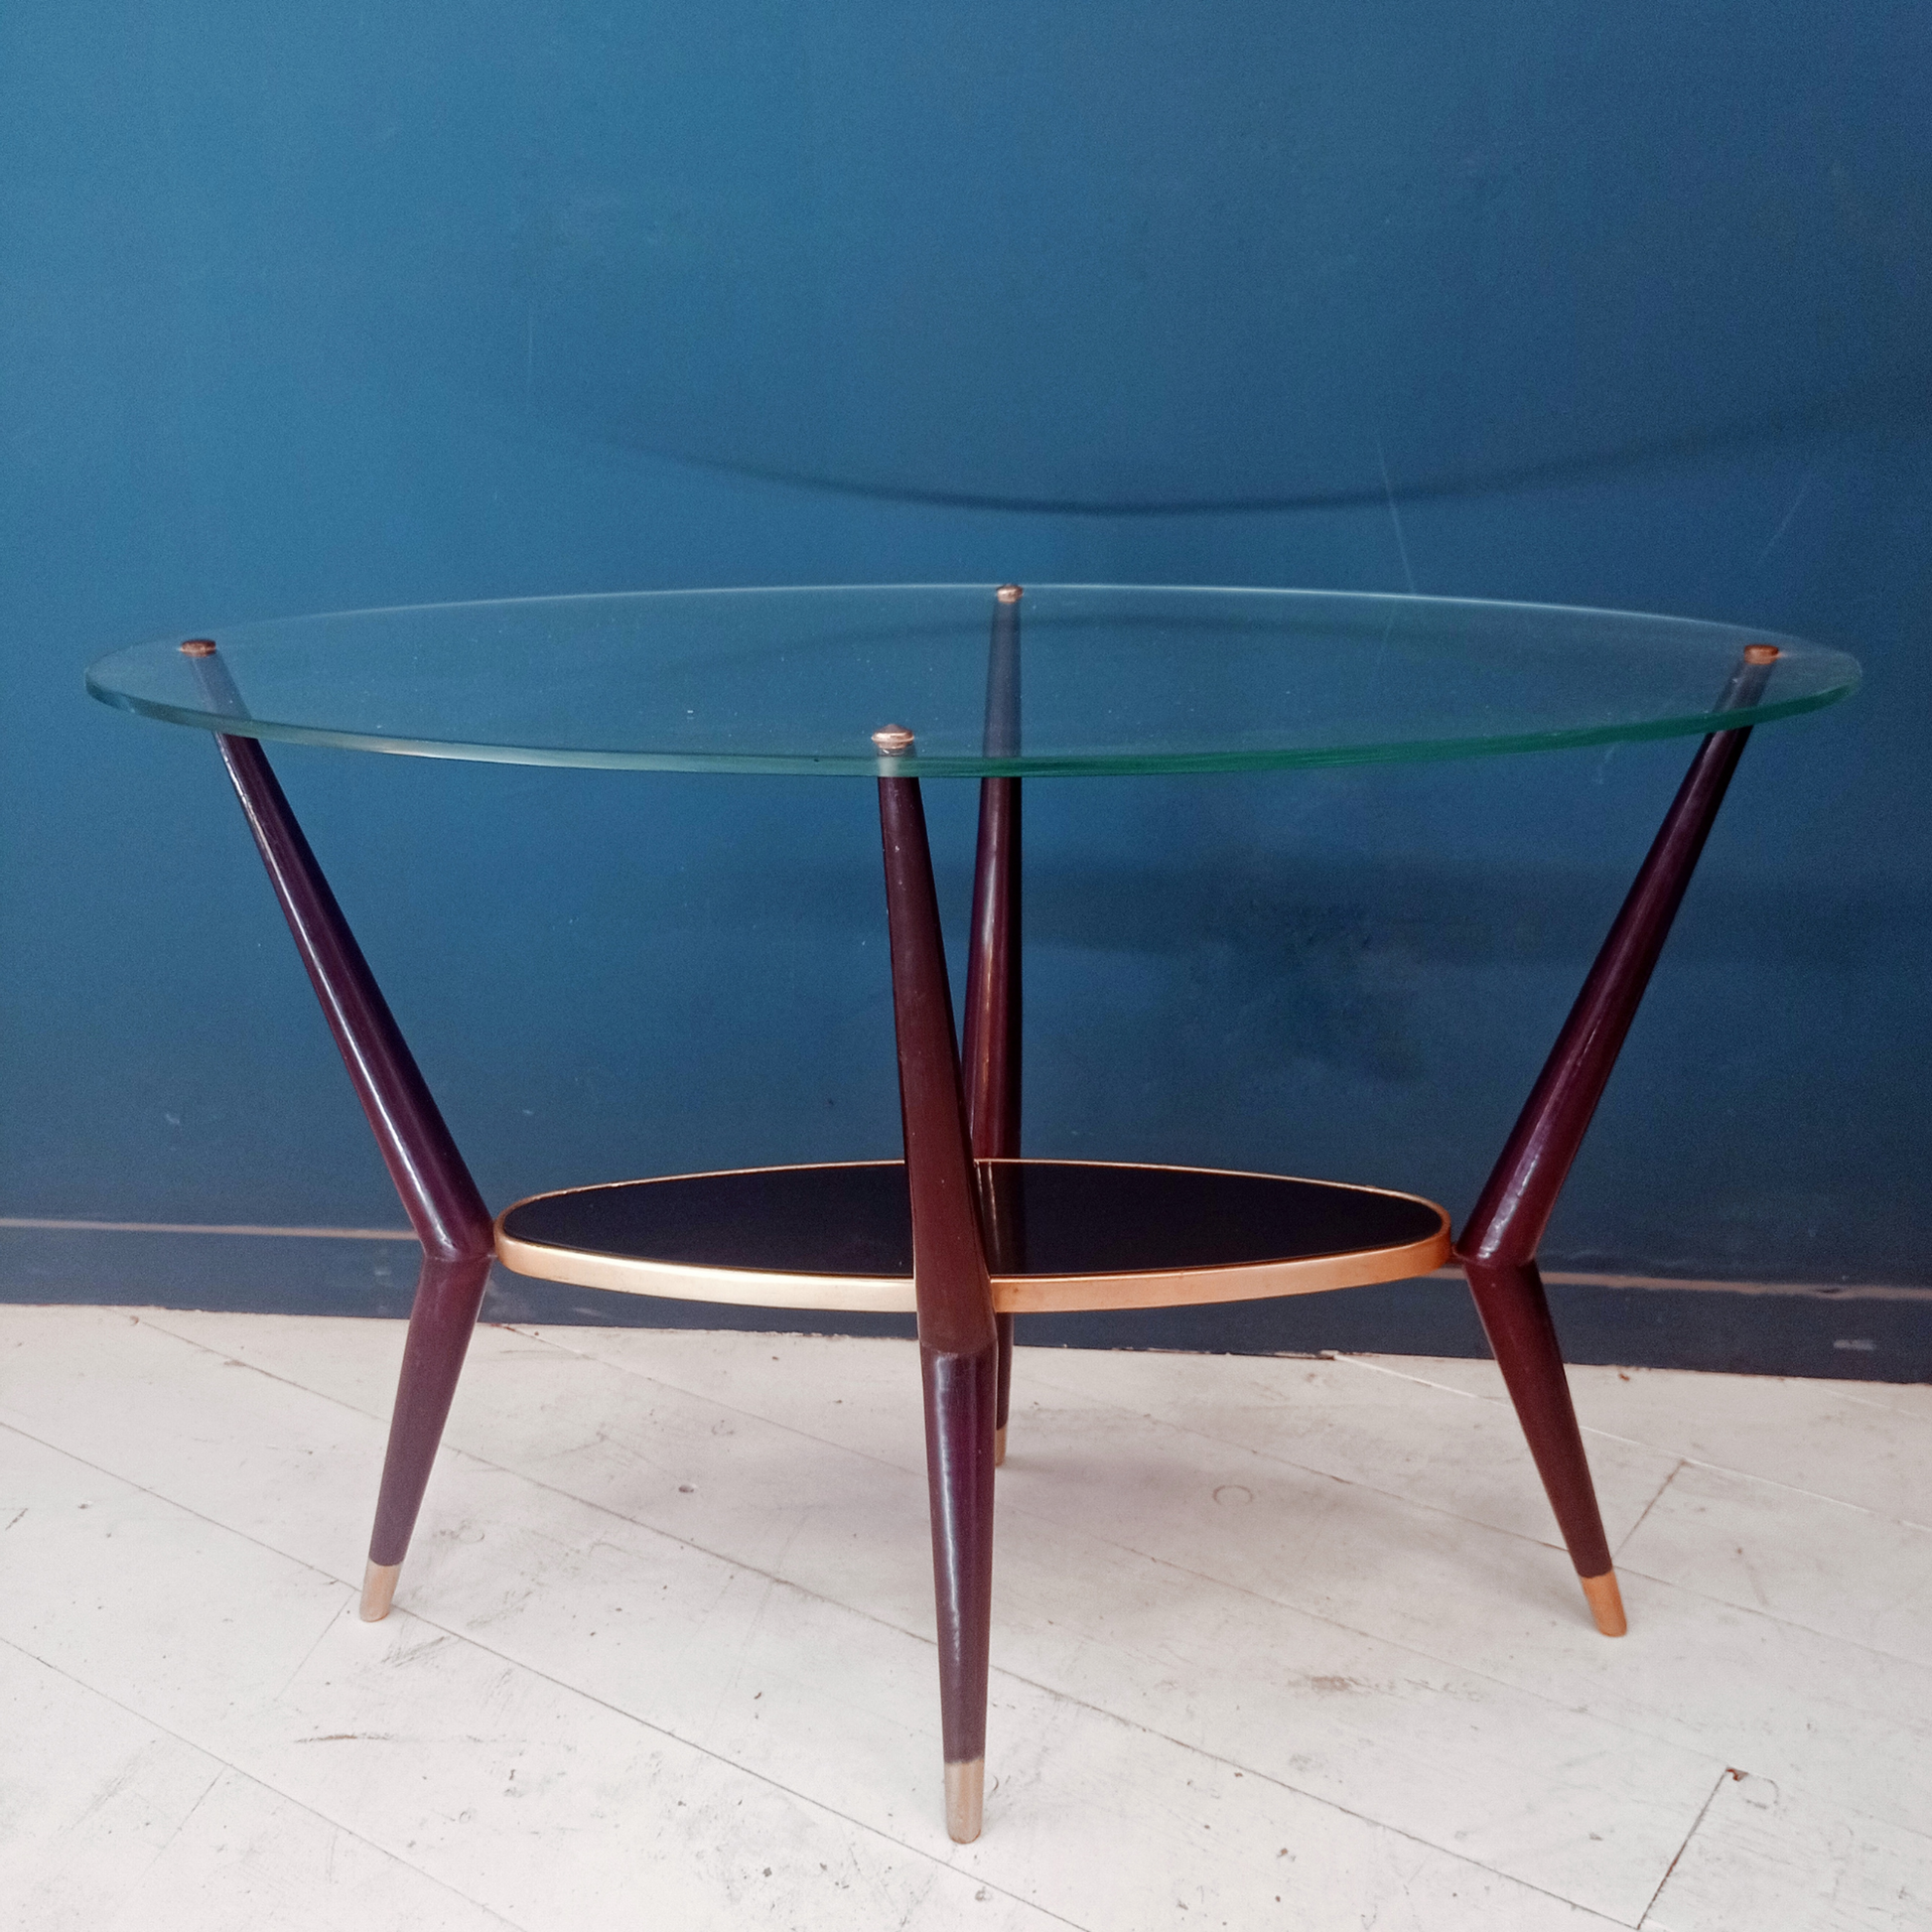 Tavolino da caffè vintage ovale con due ripiani in vetro, gambe in legno e borchie in ottone risalente agli anni '50. 